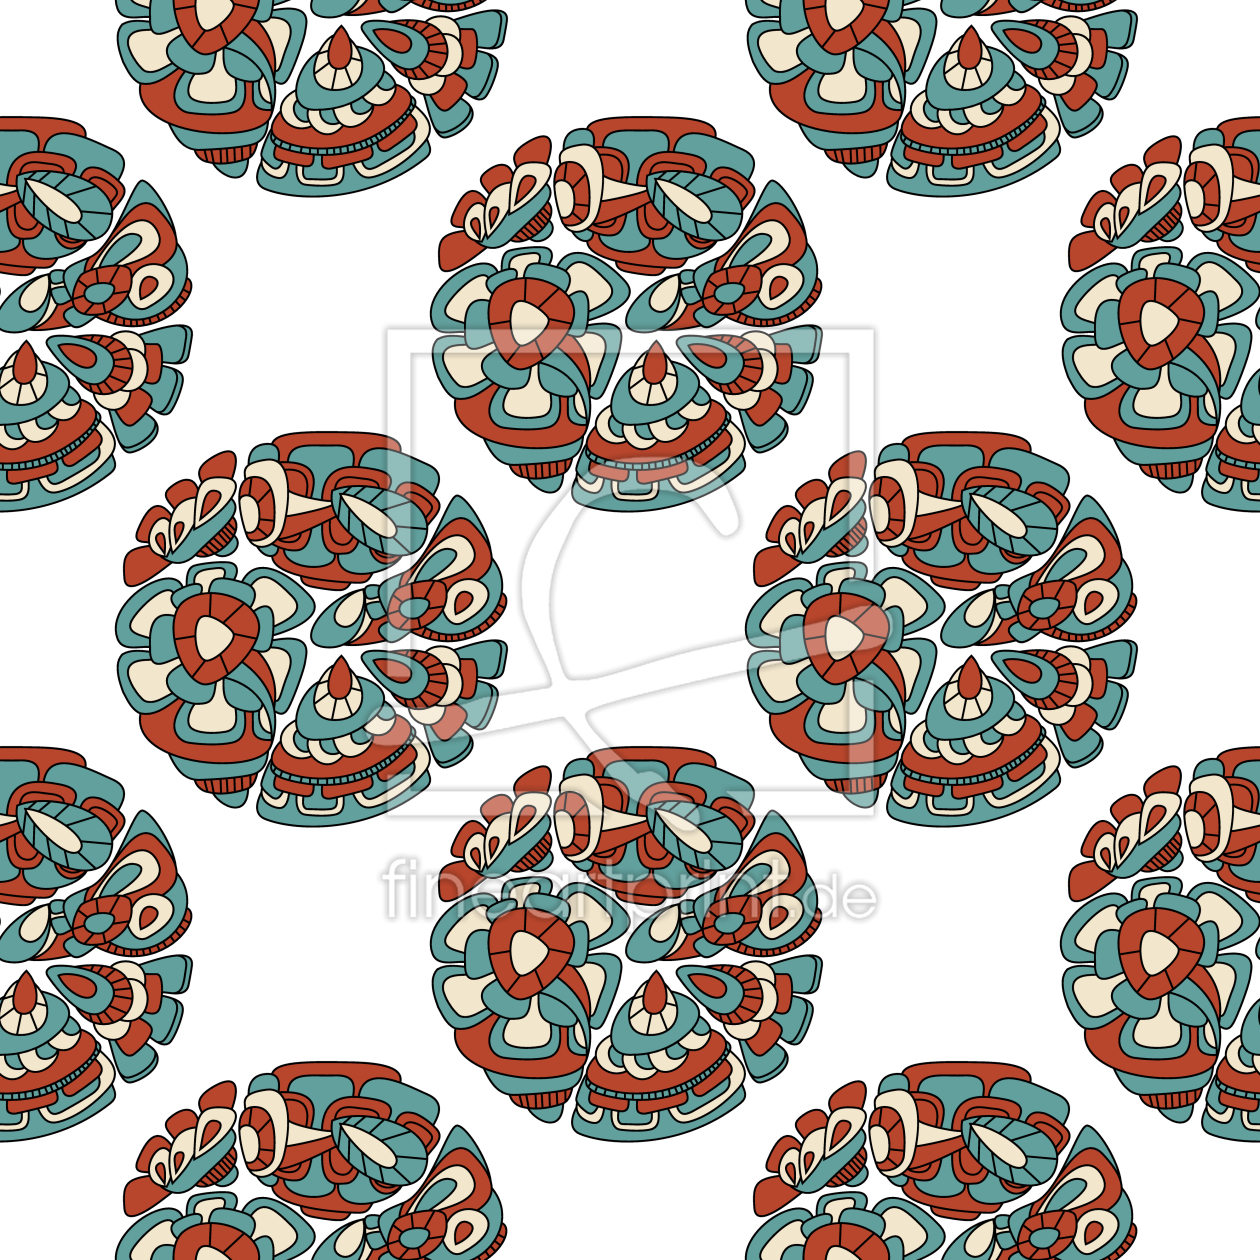 Bild-Nr.: 9013692 Ethno Kreis Symbole erstellt von patterndesigns-com